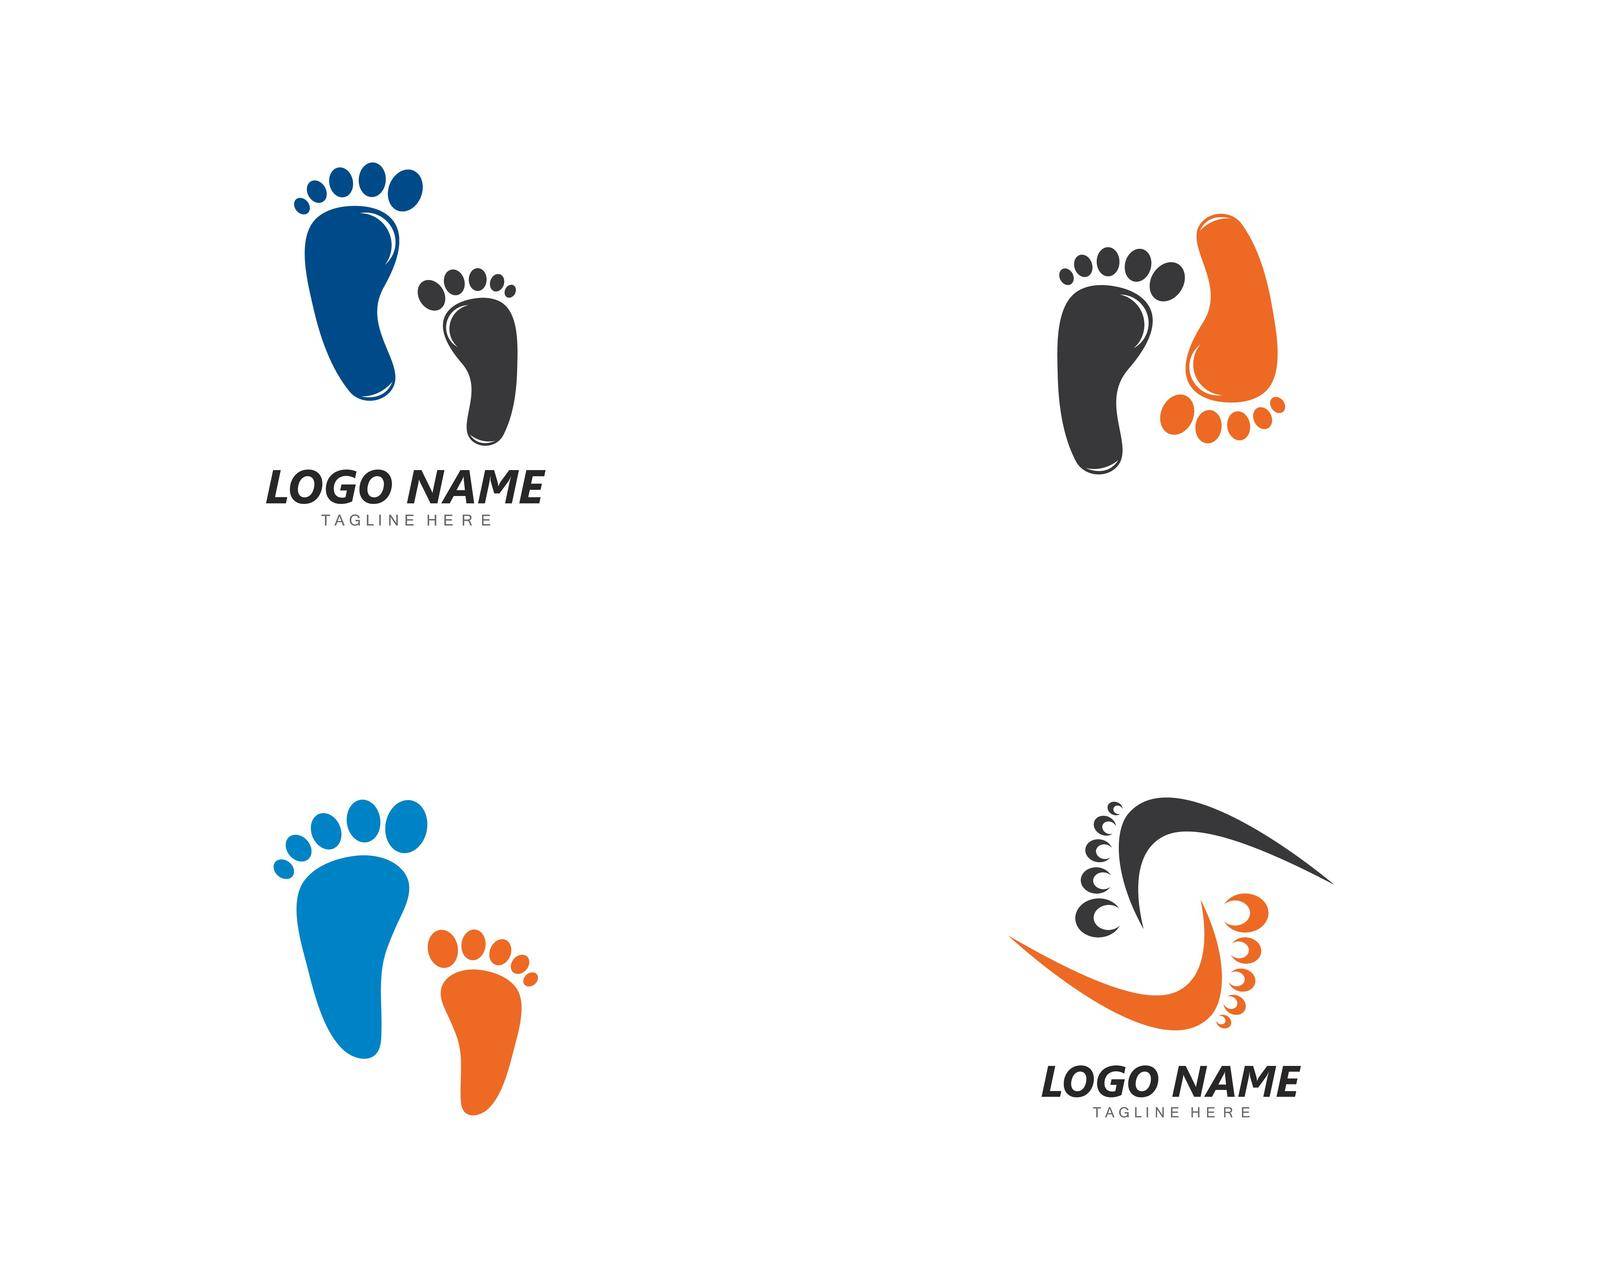 foot logo template vector icon design